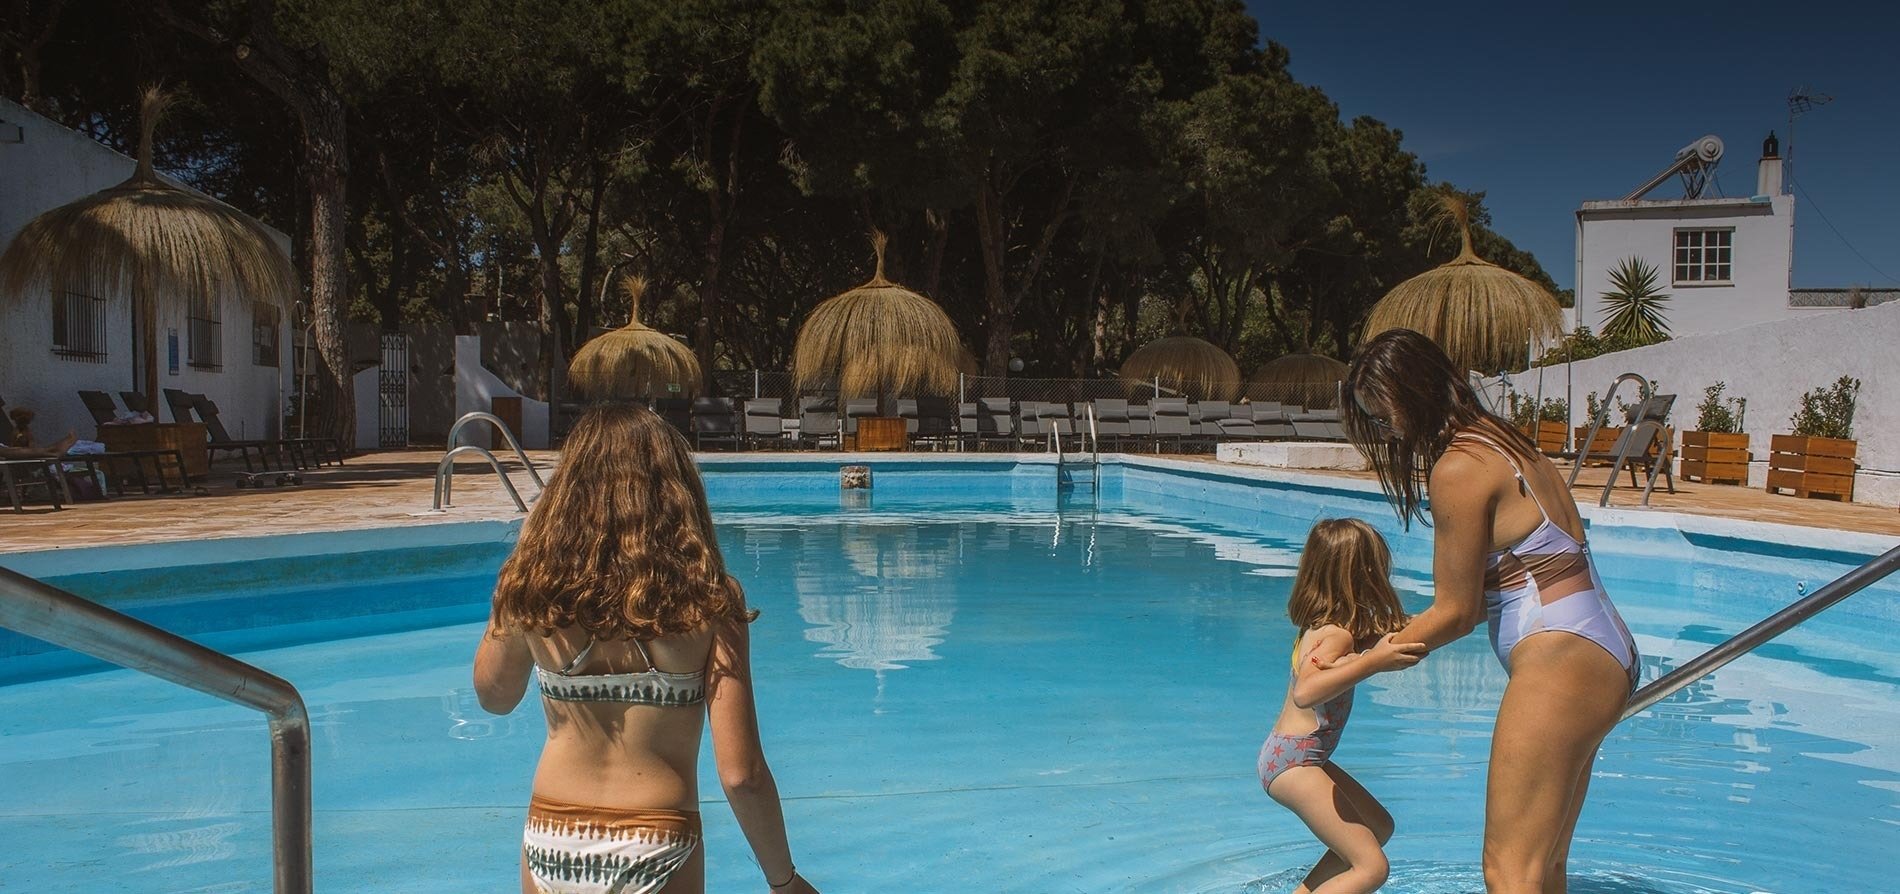 eine Frau und zwei Mädchen in Badeanzügen stehen in einem Schwimmbad